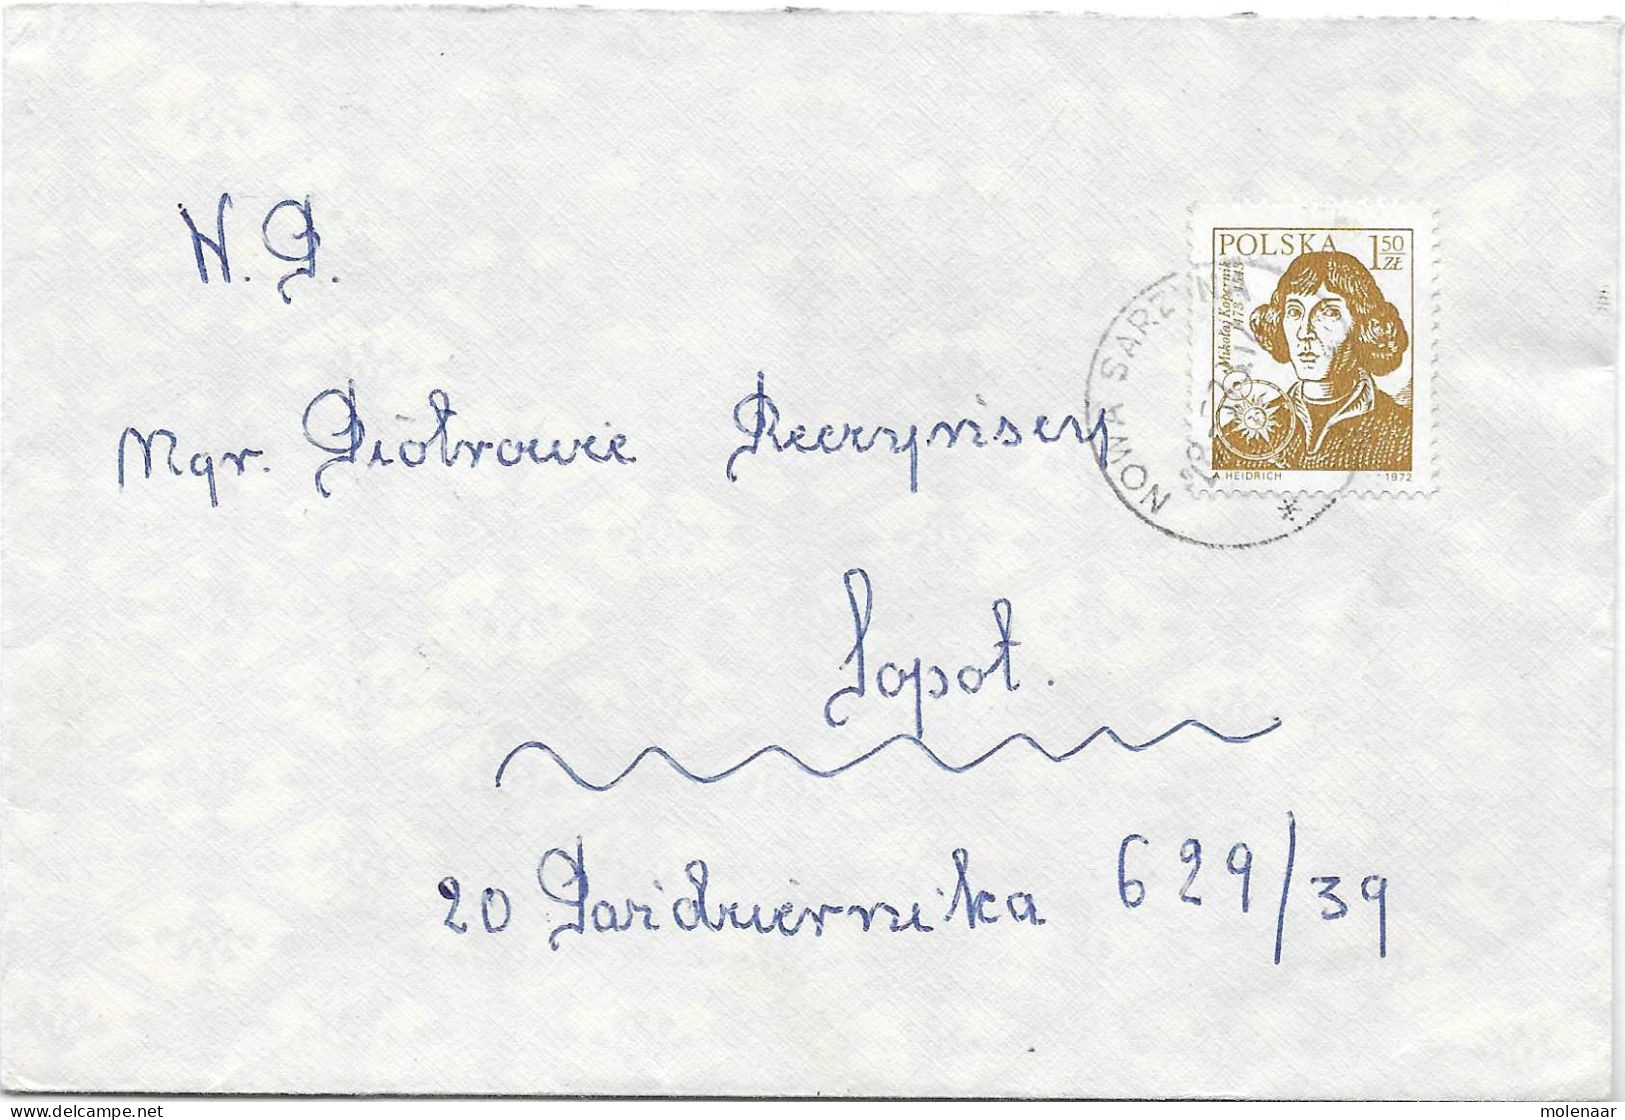 Postzegels > Europa > Polen > 1944-.... Republiek > 1971-80 >brief Met No. 2228 (17106) - Briefe U. Dokumente